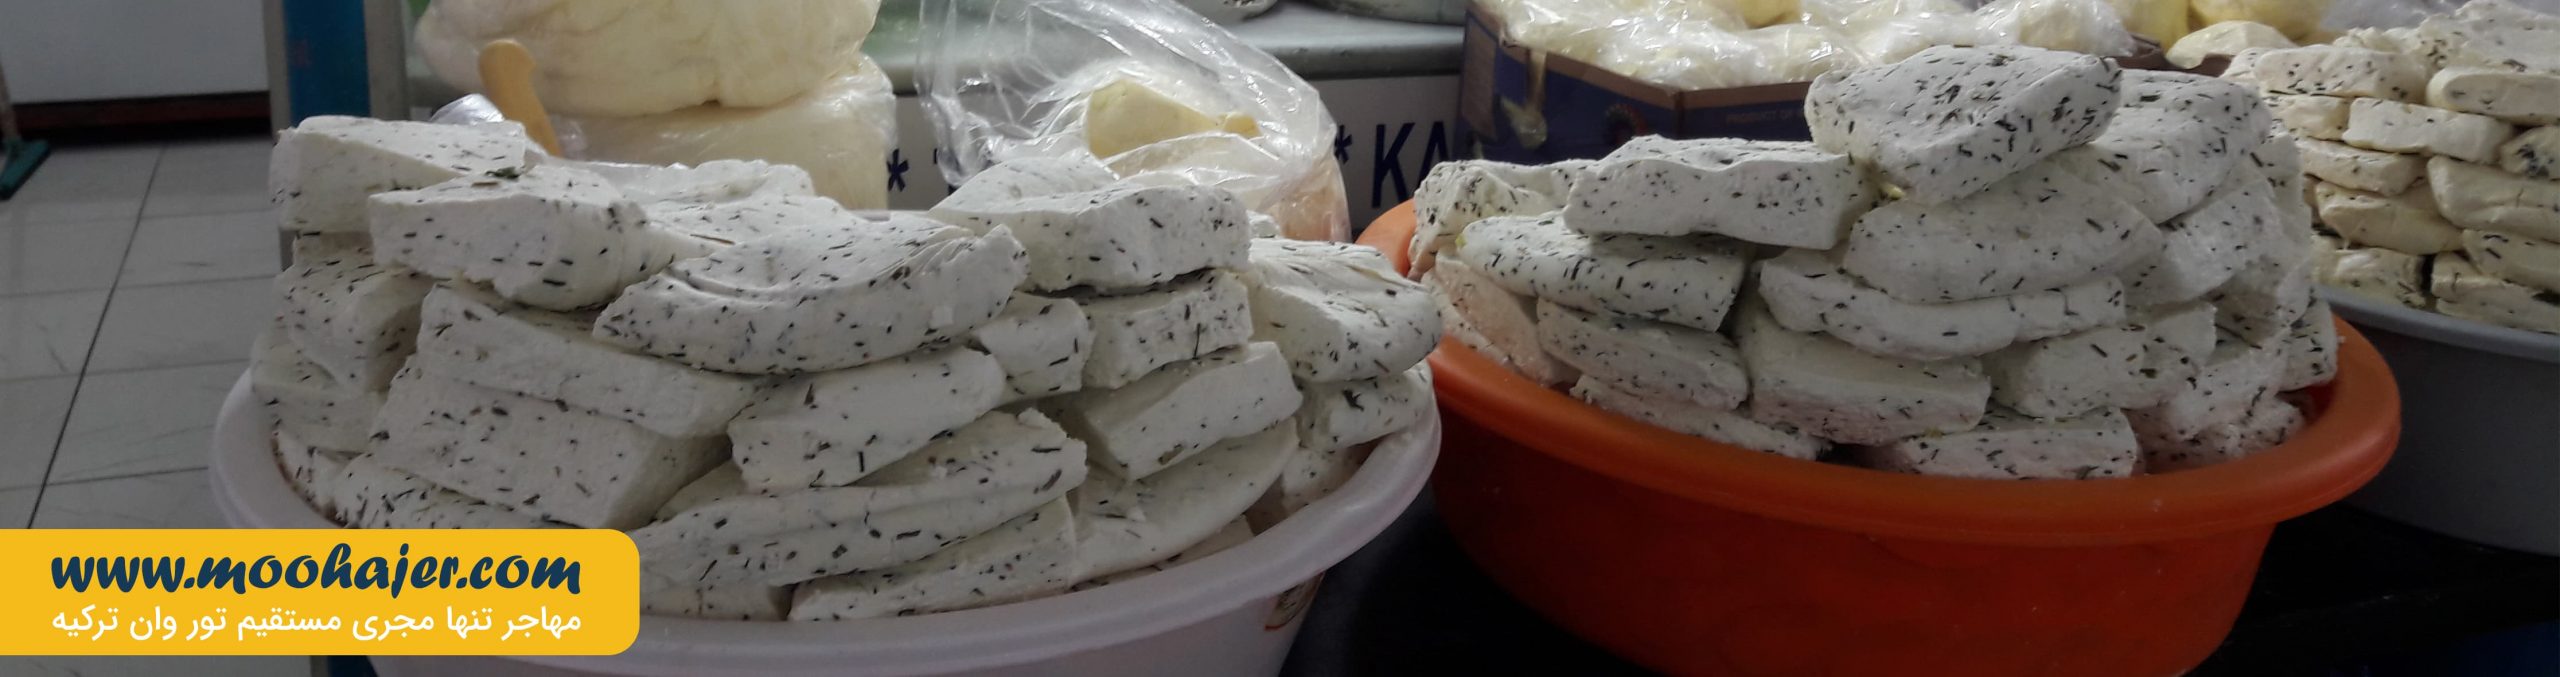 بازار پنیر وان | بازارهای شهر وان ترکیه | مهاجر سیر ایرانیان